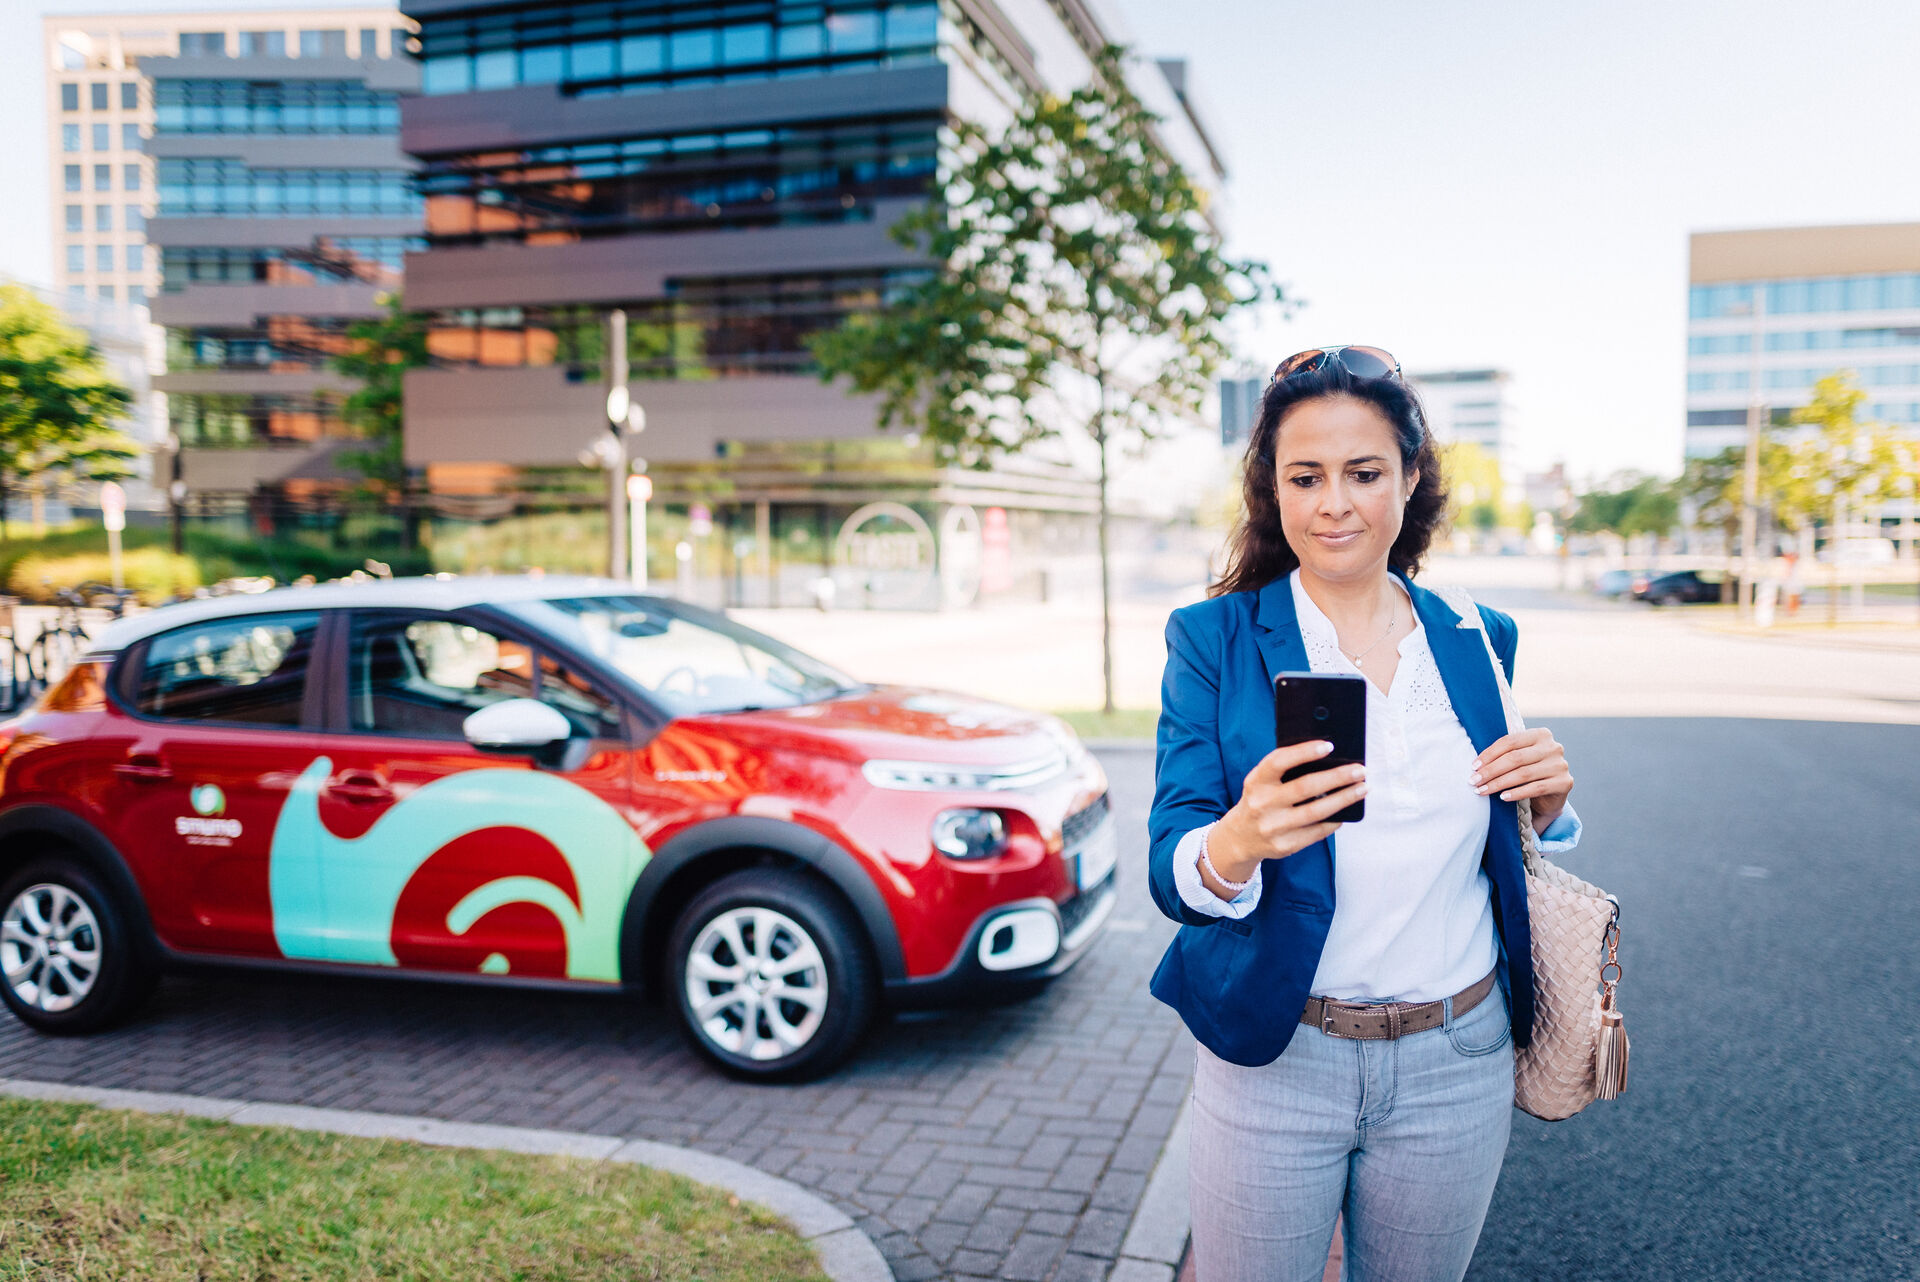 Im Vordergrund: Fau schaut auf Smartphone, im Hintergrund ein rotes smumo-Auto vor modernem Bürogebäude